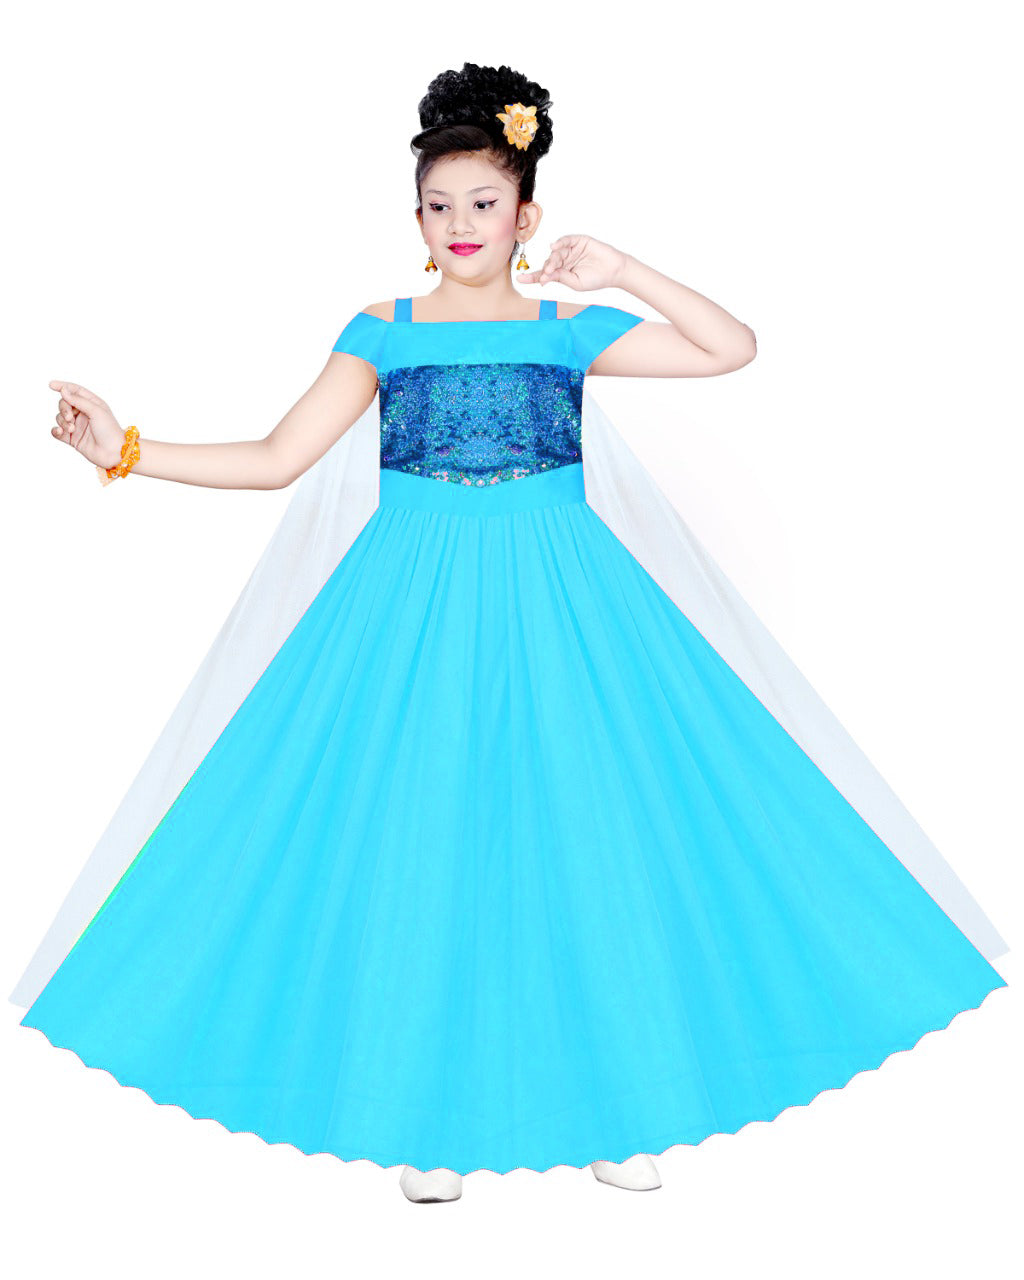 My Lil Princess Frozen Elsa Dress Side View